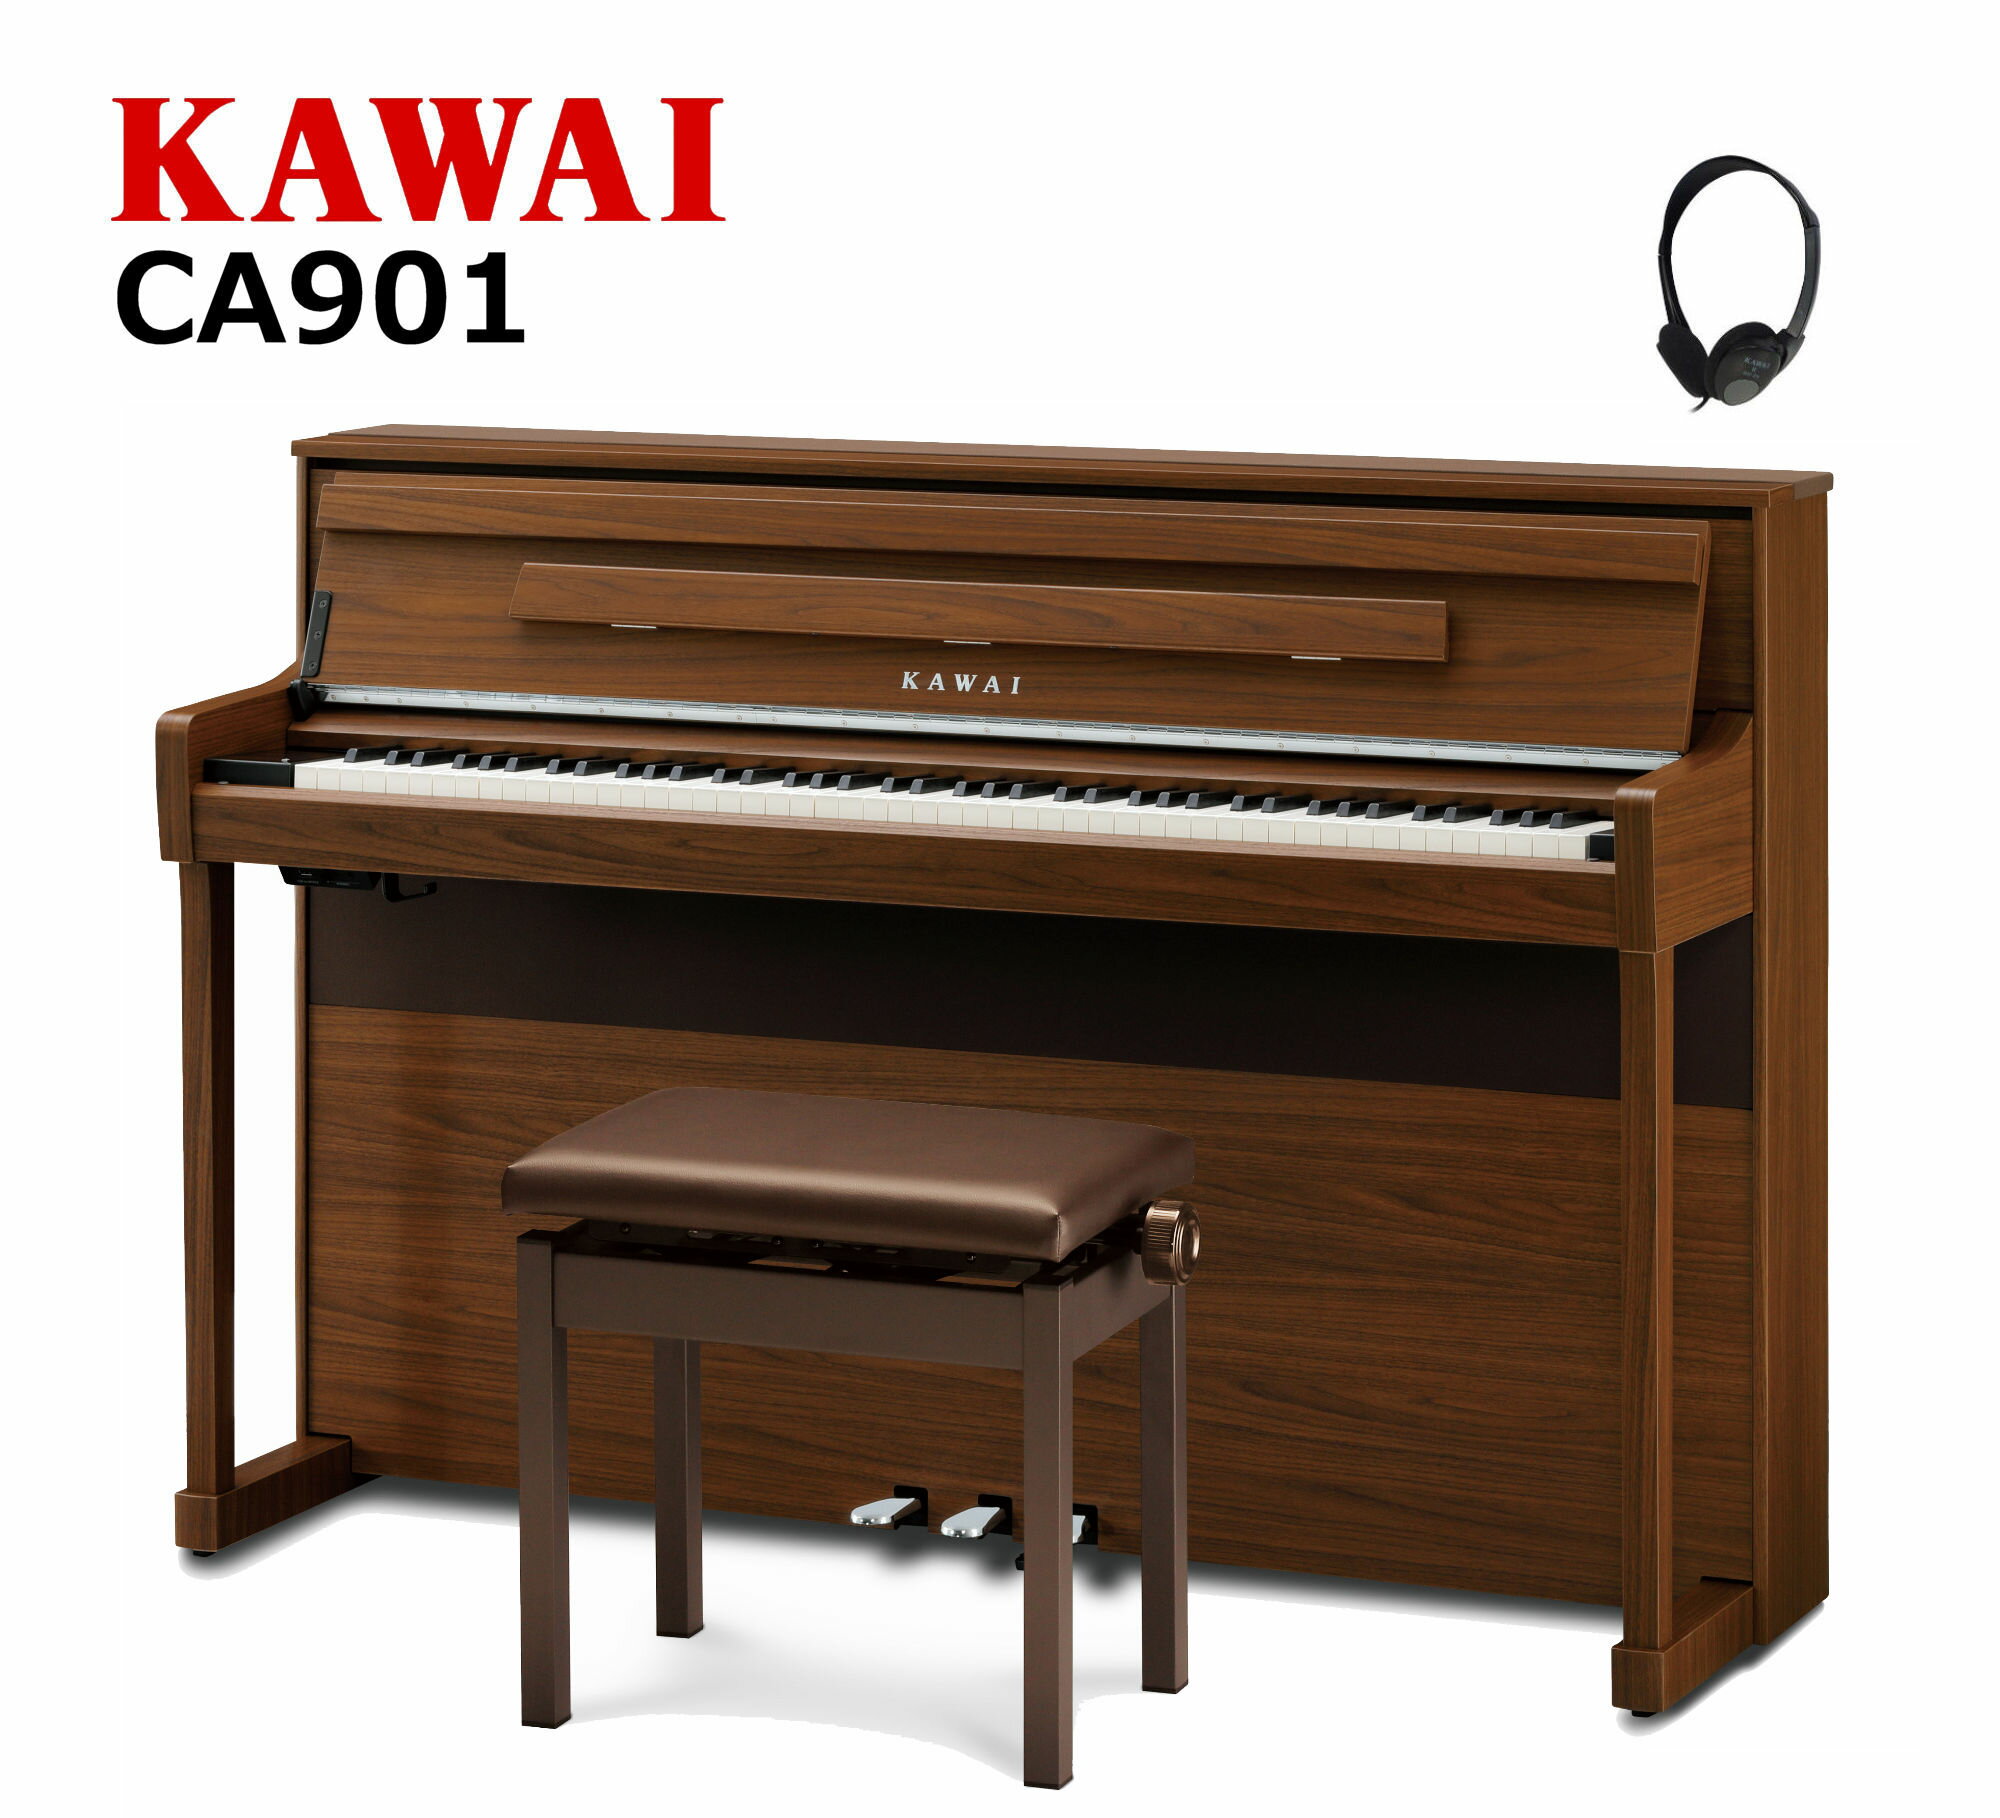 【配送設置無料 ＆ 不要ピアノ引取処分無料】KAWAI カワイ DigitalPiano 電子ピアノ 88鍵 木製鍵盤 響板スピーカー搭載 CA901 NW ナチュラルウォルナット調仕上げ